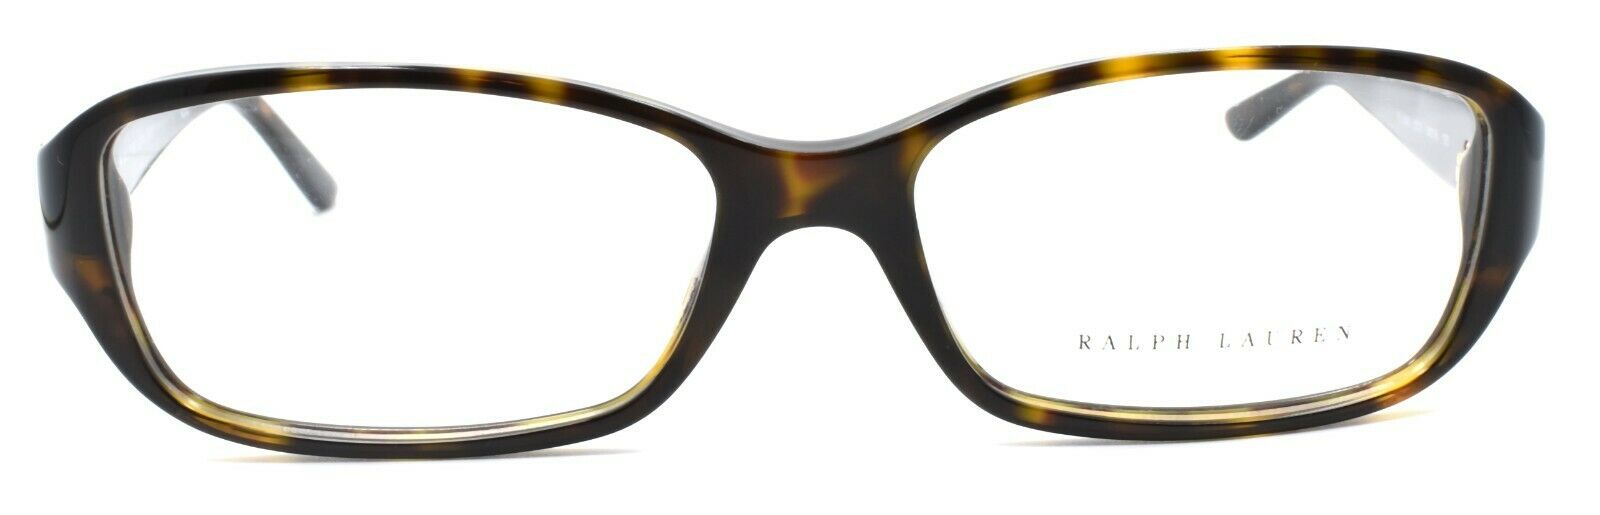 2-Ralph Lauren RL6085 5003 Women's Eyeglasses Frames 54-16-135 Dark Havana Brown-713132405673-IKSpecs